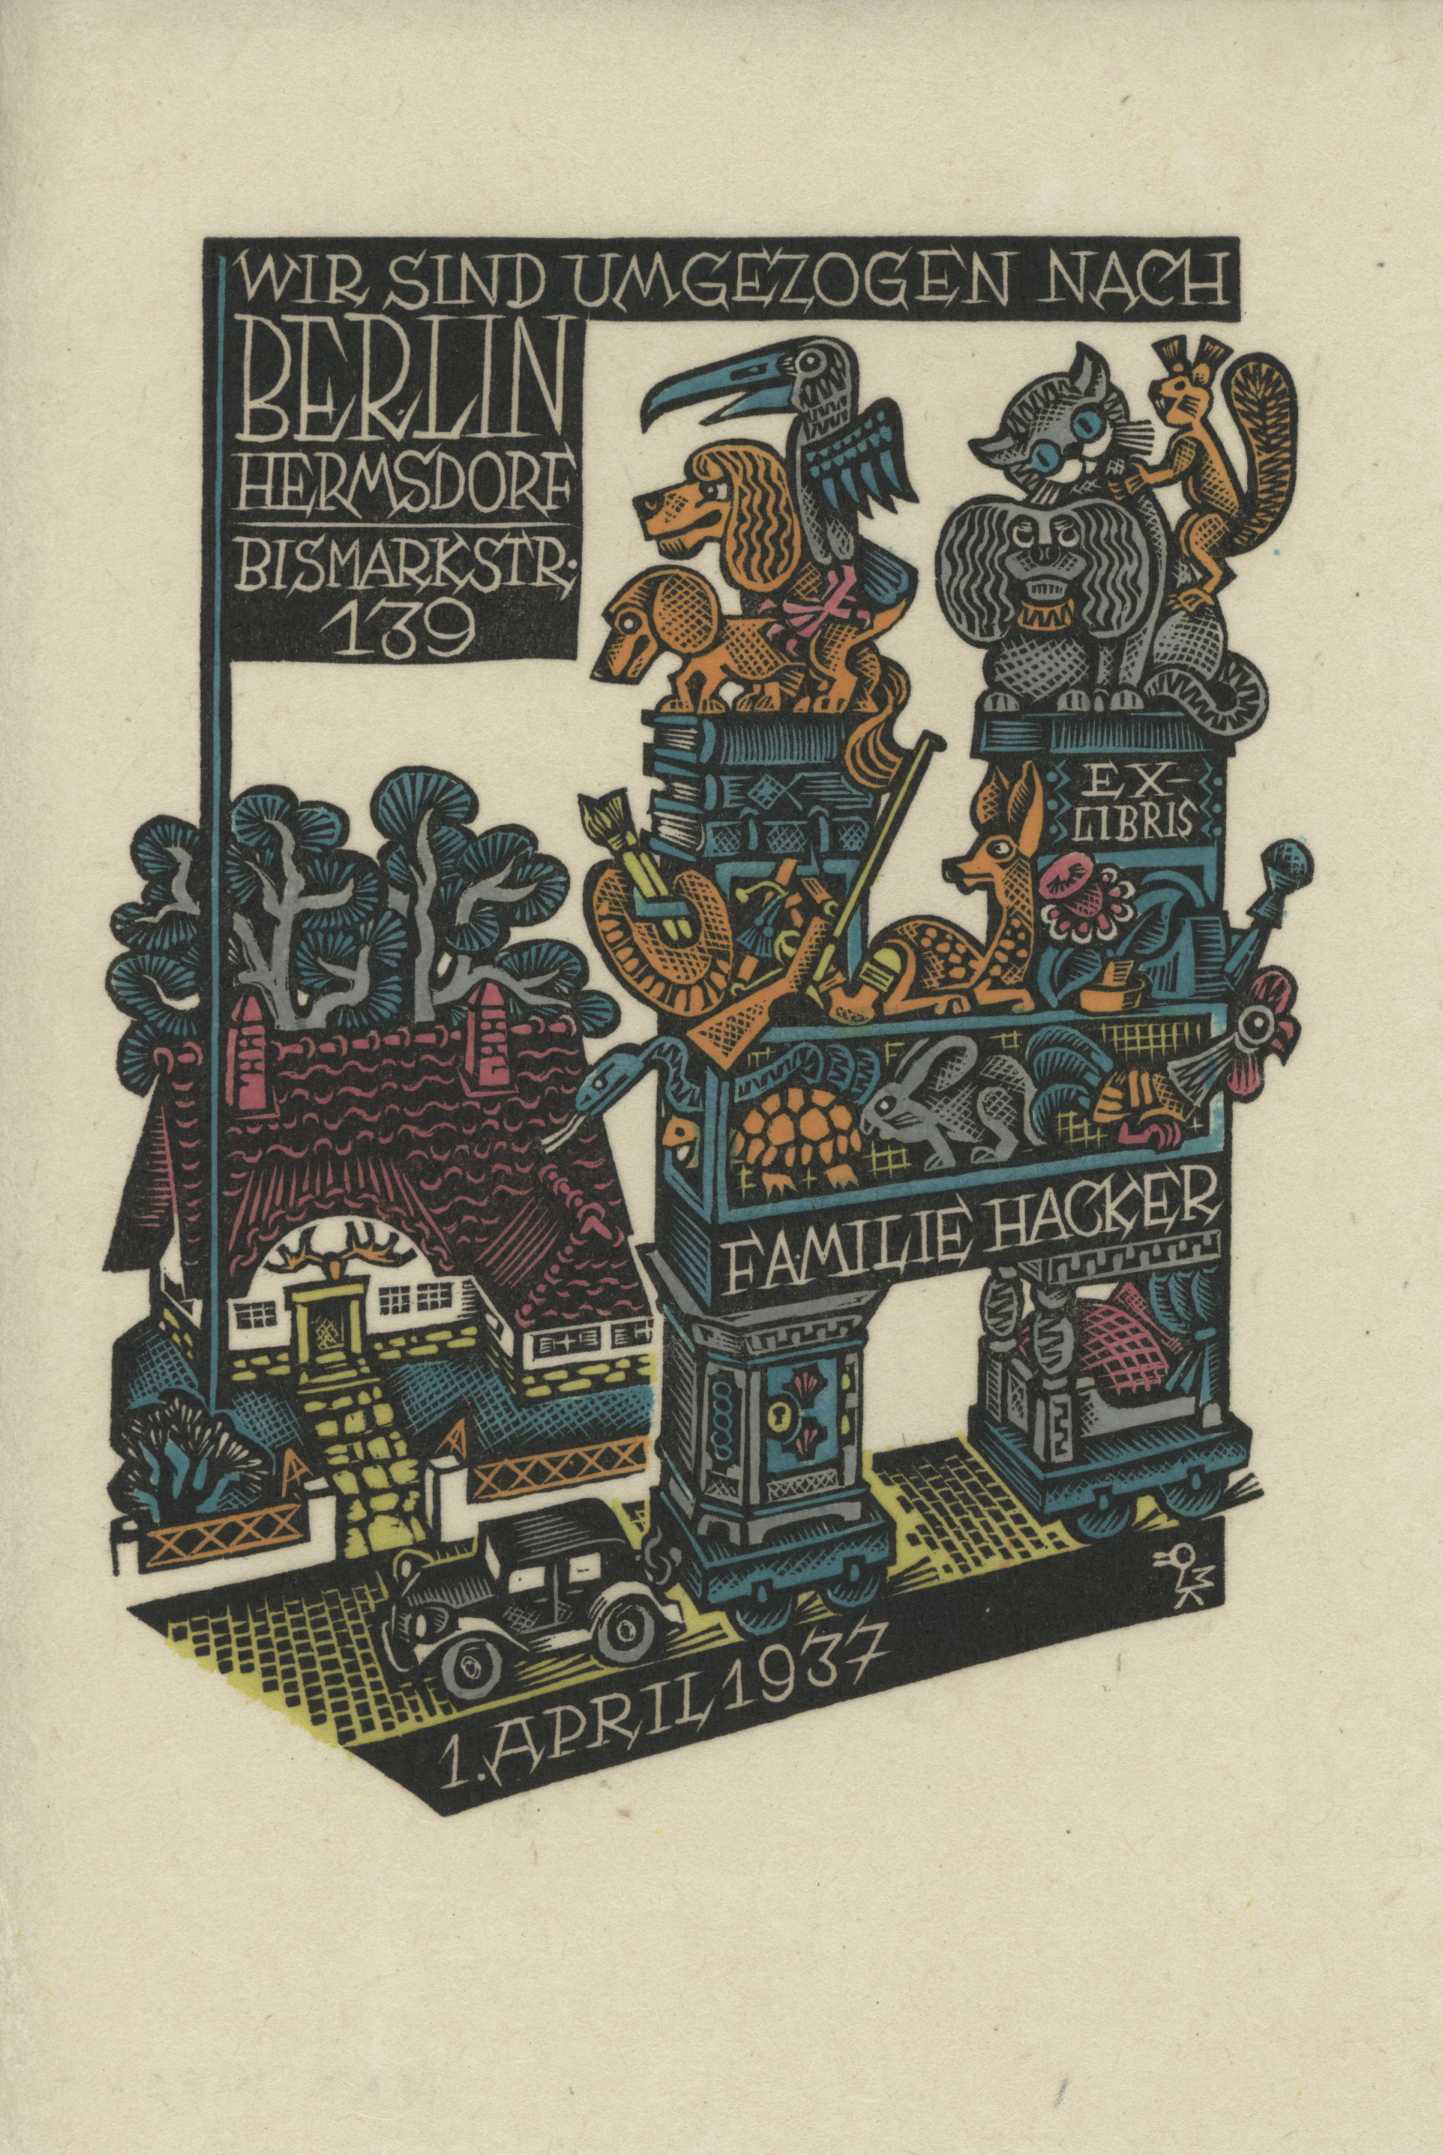 Featured image for “Verhuiskaart 1937”